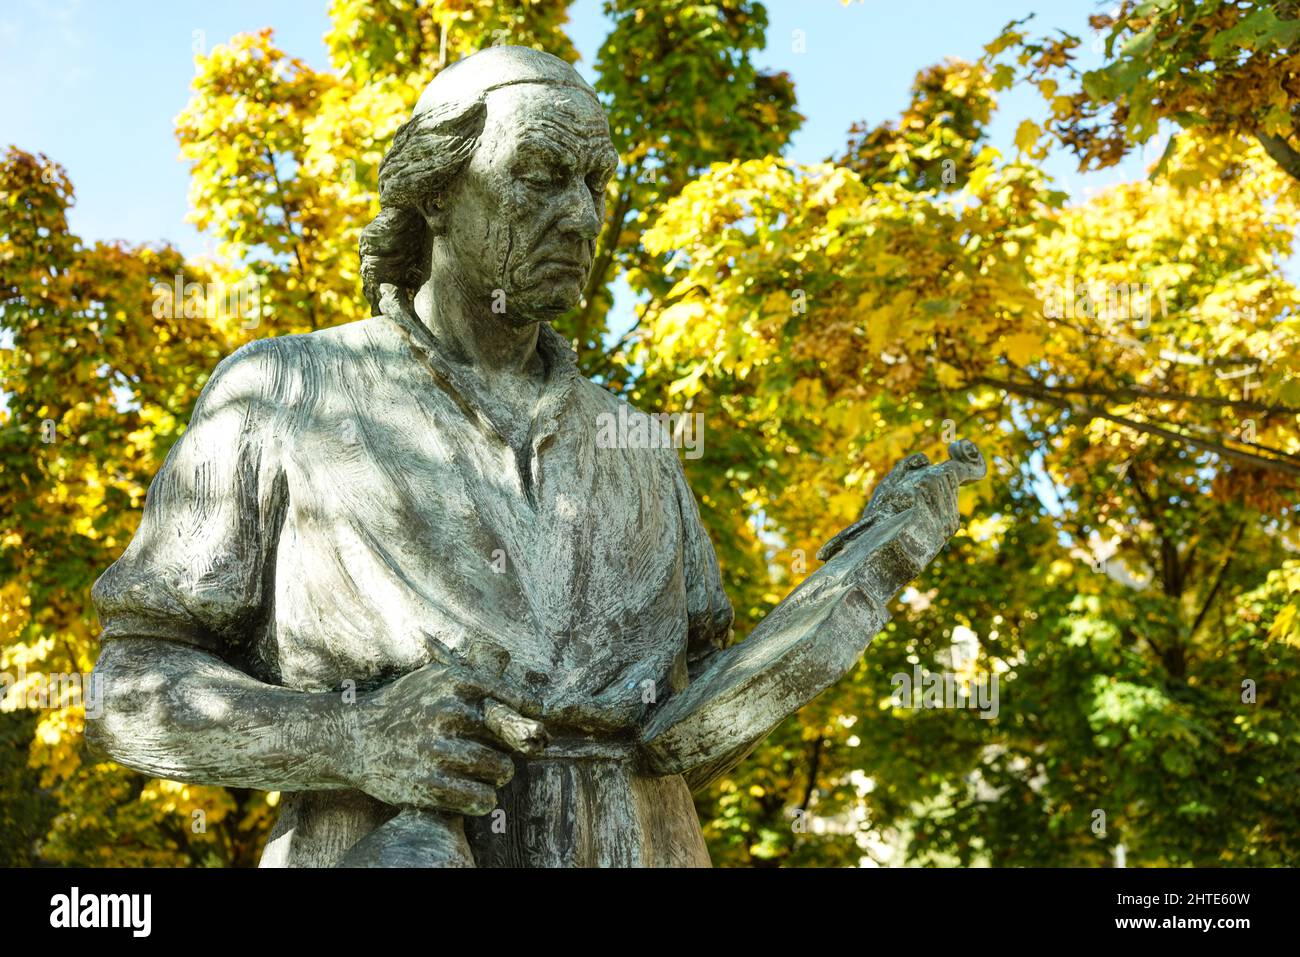 Gros plan de la statue d'Antonio Stradivari contre le feuillage d'automne. Cremona, Italie. Banque D'Images